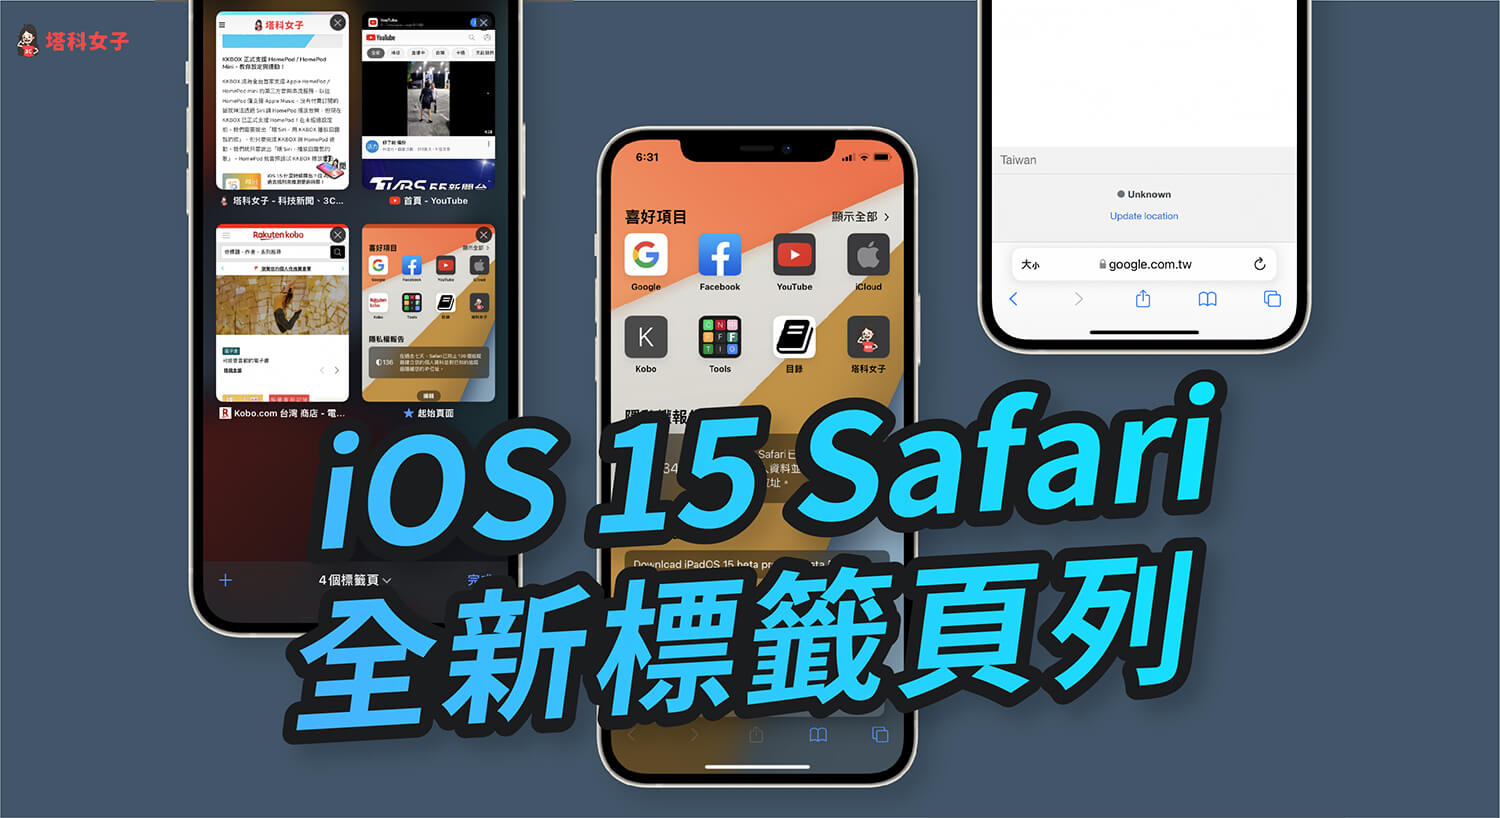 iOS 15 Safari 新功能教學，iPhone 用戶必學 10 招技巧！